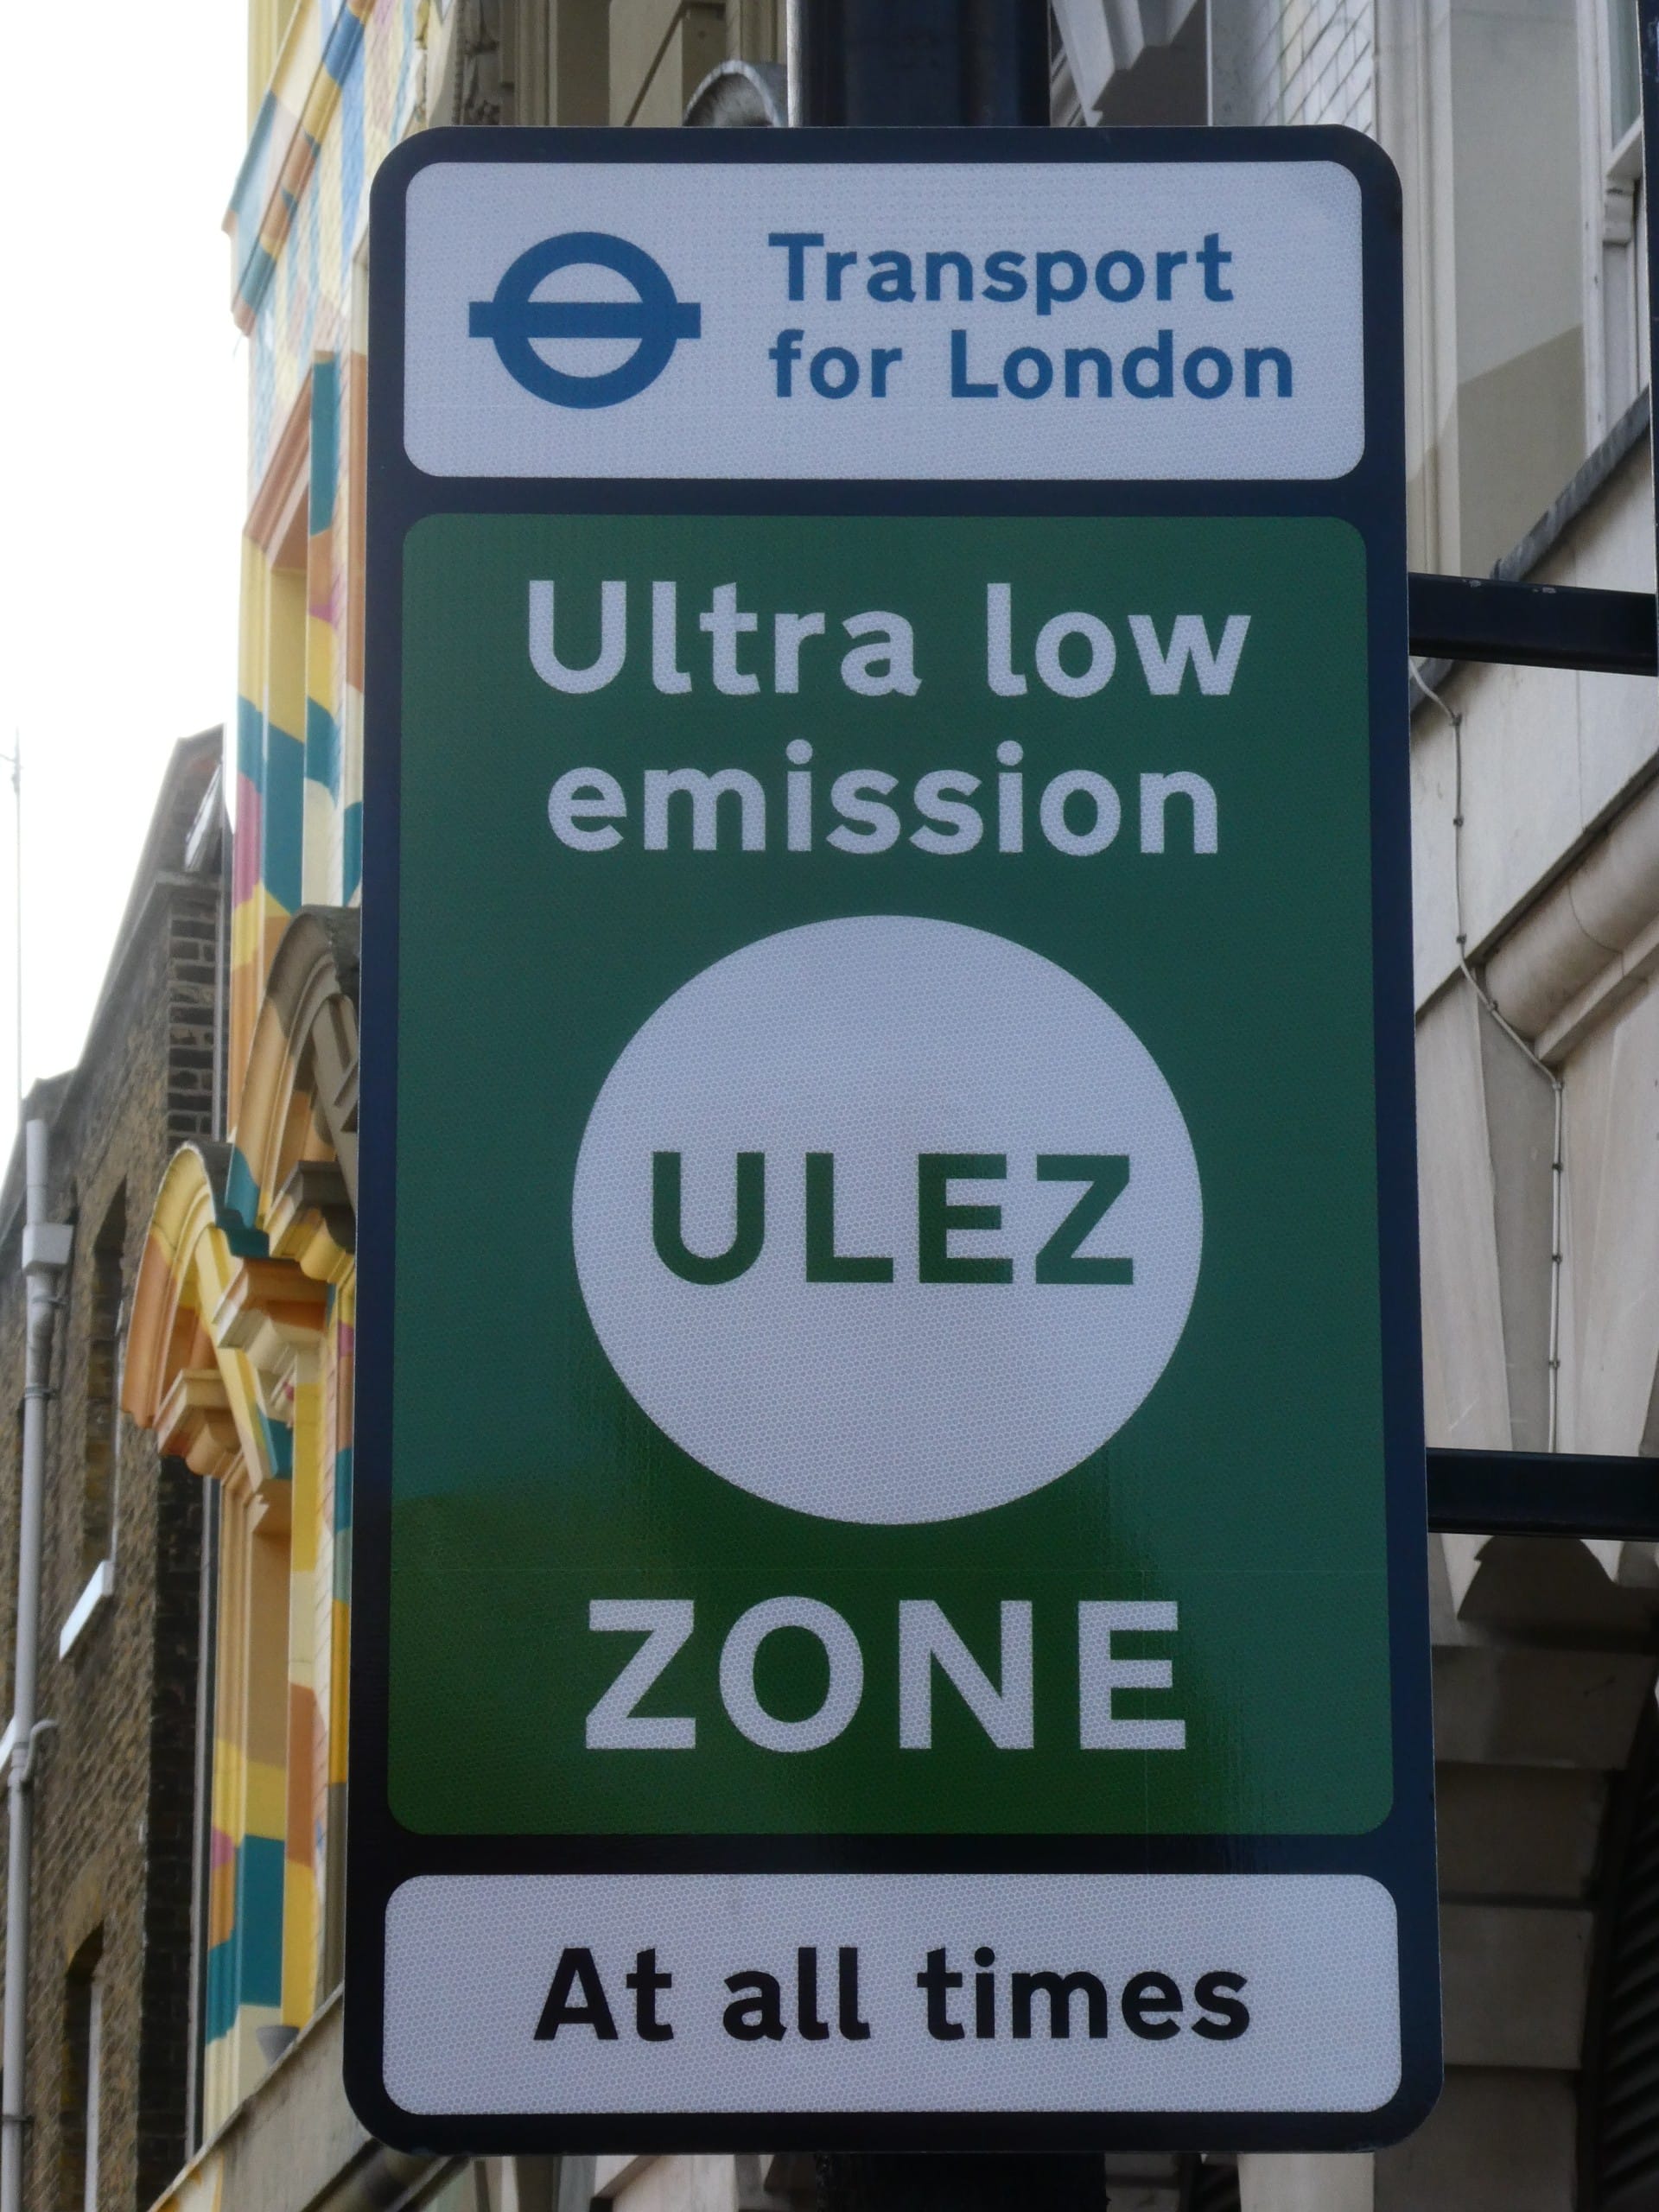 Seit August gilt in ganz London die Ultra Low Emission Zone: Wessen Auto nicht ausreichend umweltfreundlich ist, muss fortan 12,50 Pfund zahlen, um in die Stadt zu fahren. Bildquelle: citytransportinfo, CC0, via Wikimedia Commons